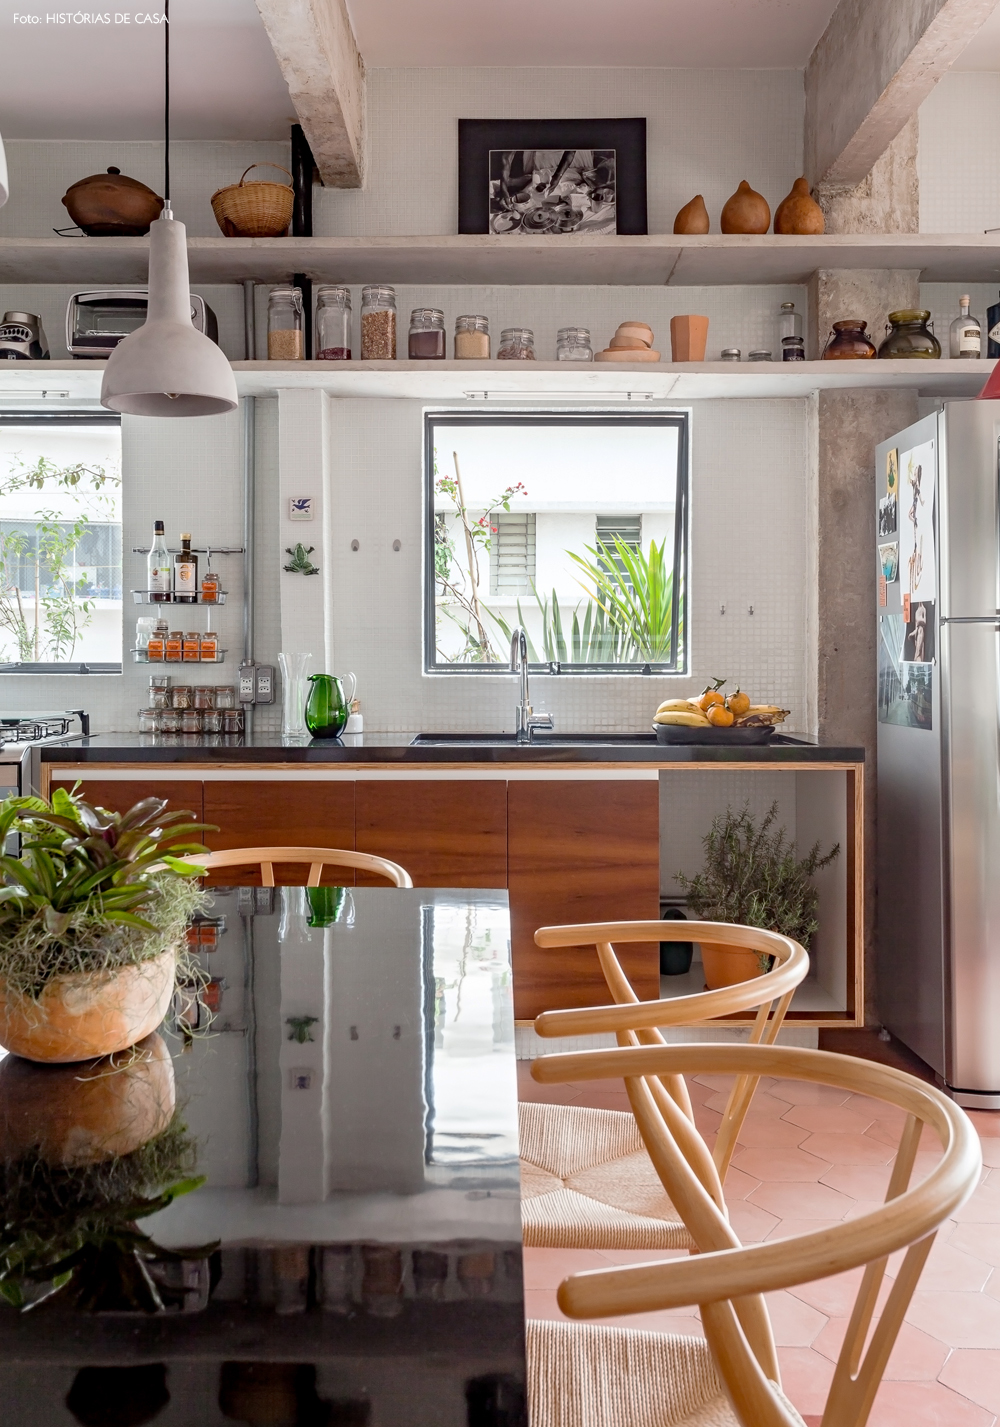 29-decoracao-cozinha-prateleiras-bancada-concreto-granito-preto